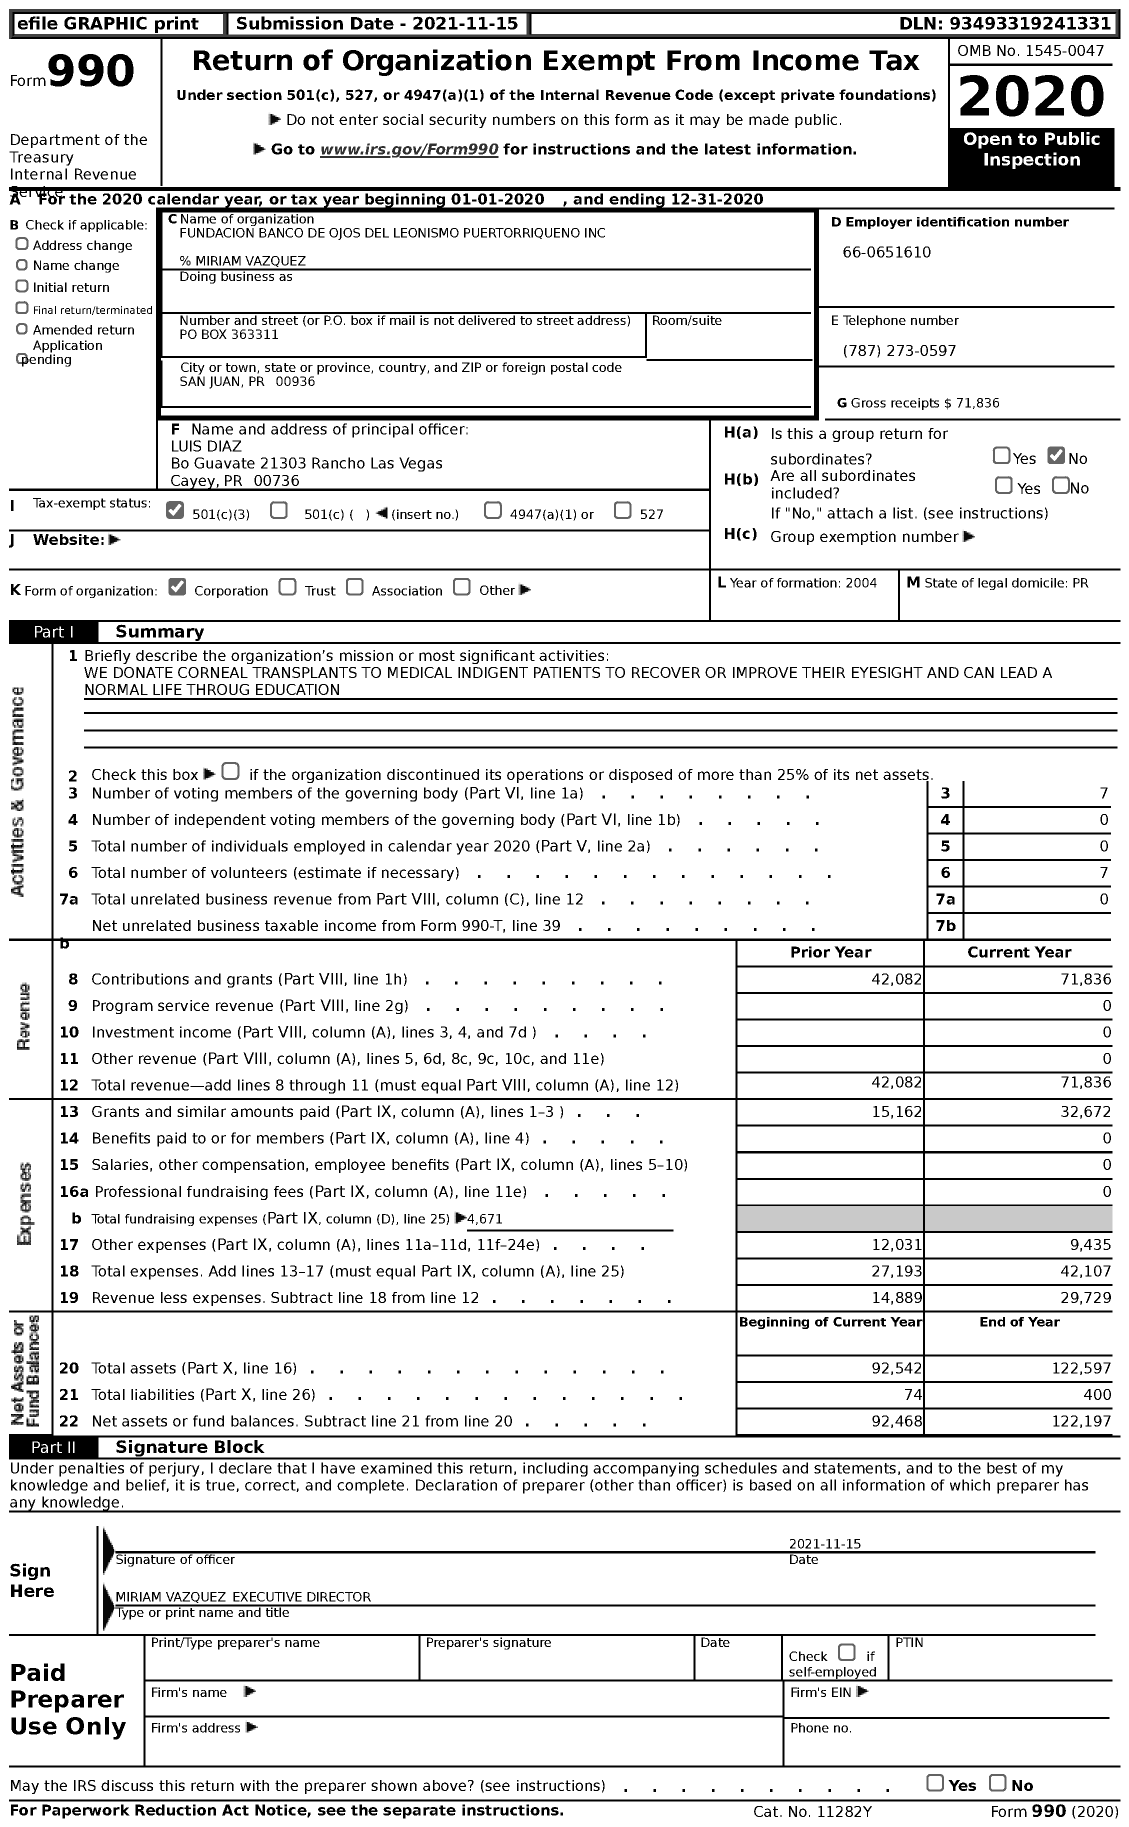 Image of first page of 2020 Form 990 for Fundacion Banco de Ojos Del Leonismo Puertorriqueno